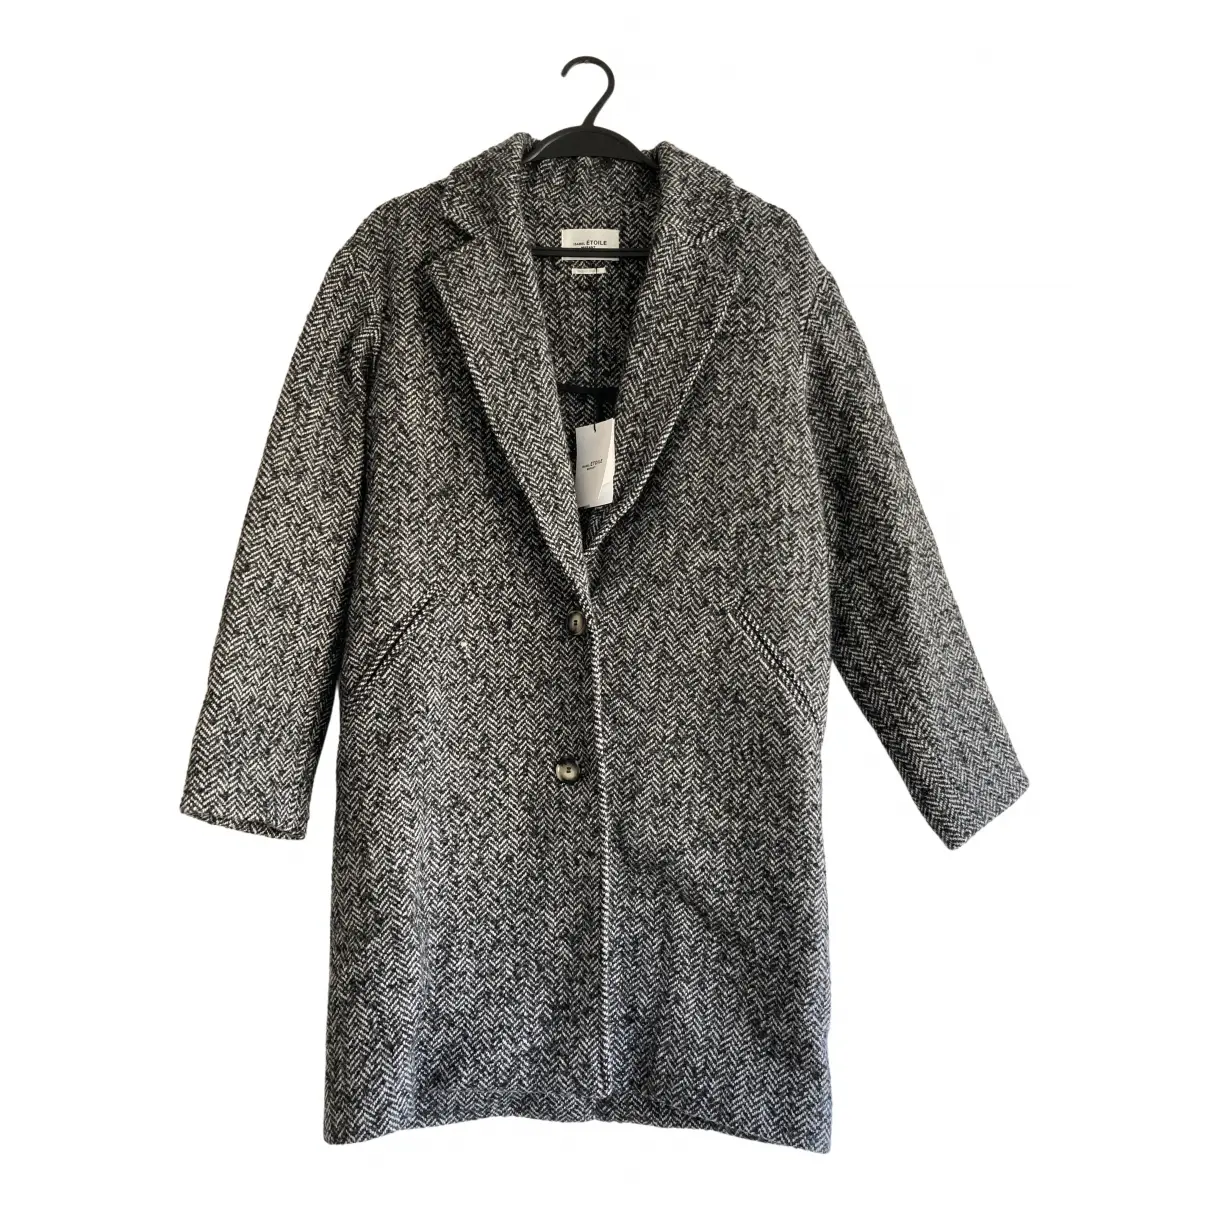 Wool coat Isabel Marant Etoile